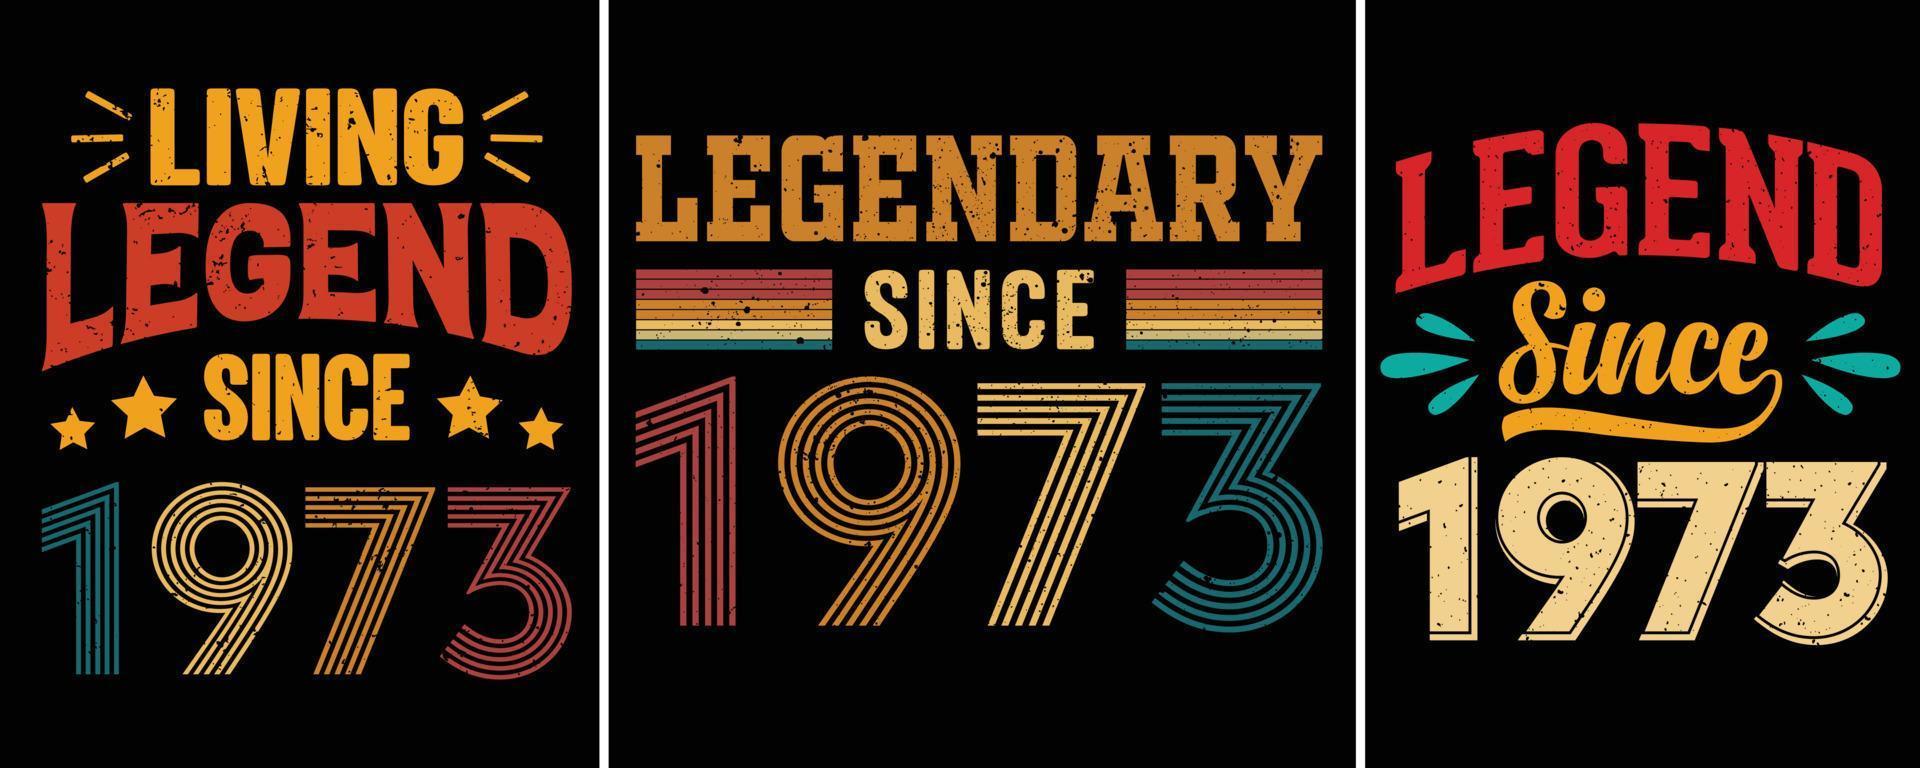 vivente leggenda da 1973, leggendario da 1973, leggenda da 1973, tipografia maglietta disegno, compleanno regalo vettore